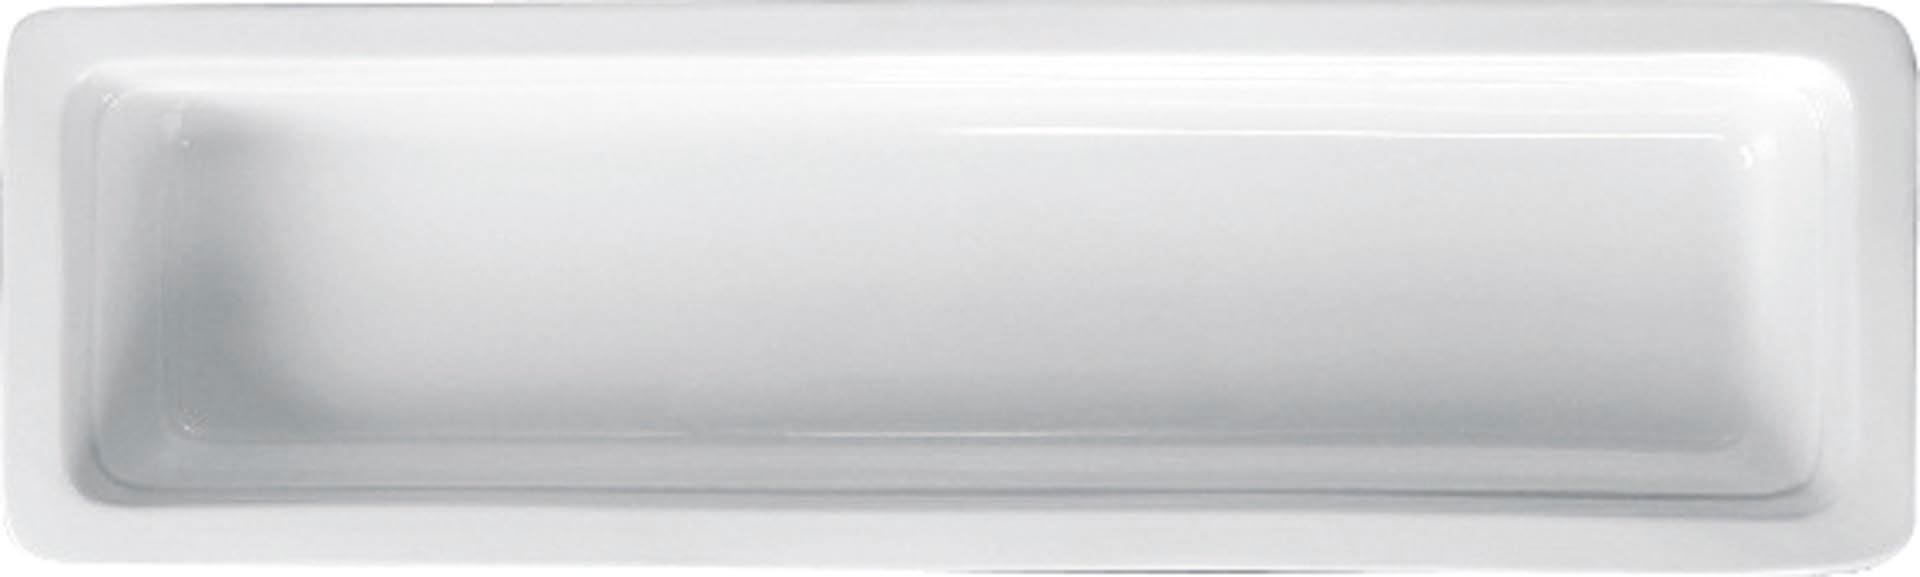 GN-Behälter Porzellan weiss GN 2/4-65 Inhalt: 3,0 Liter